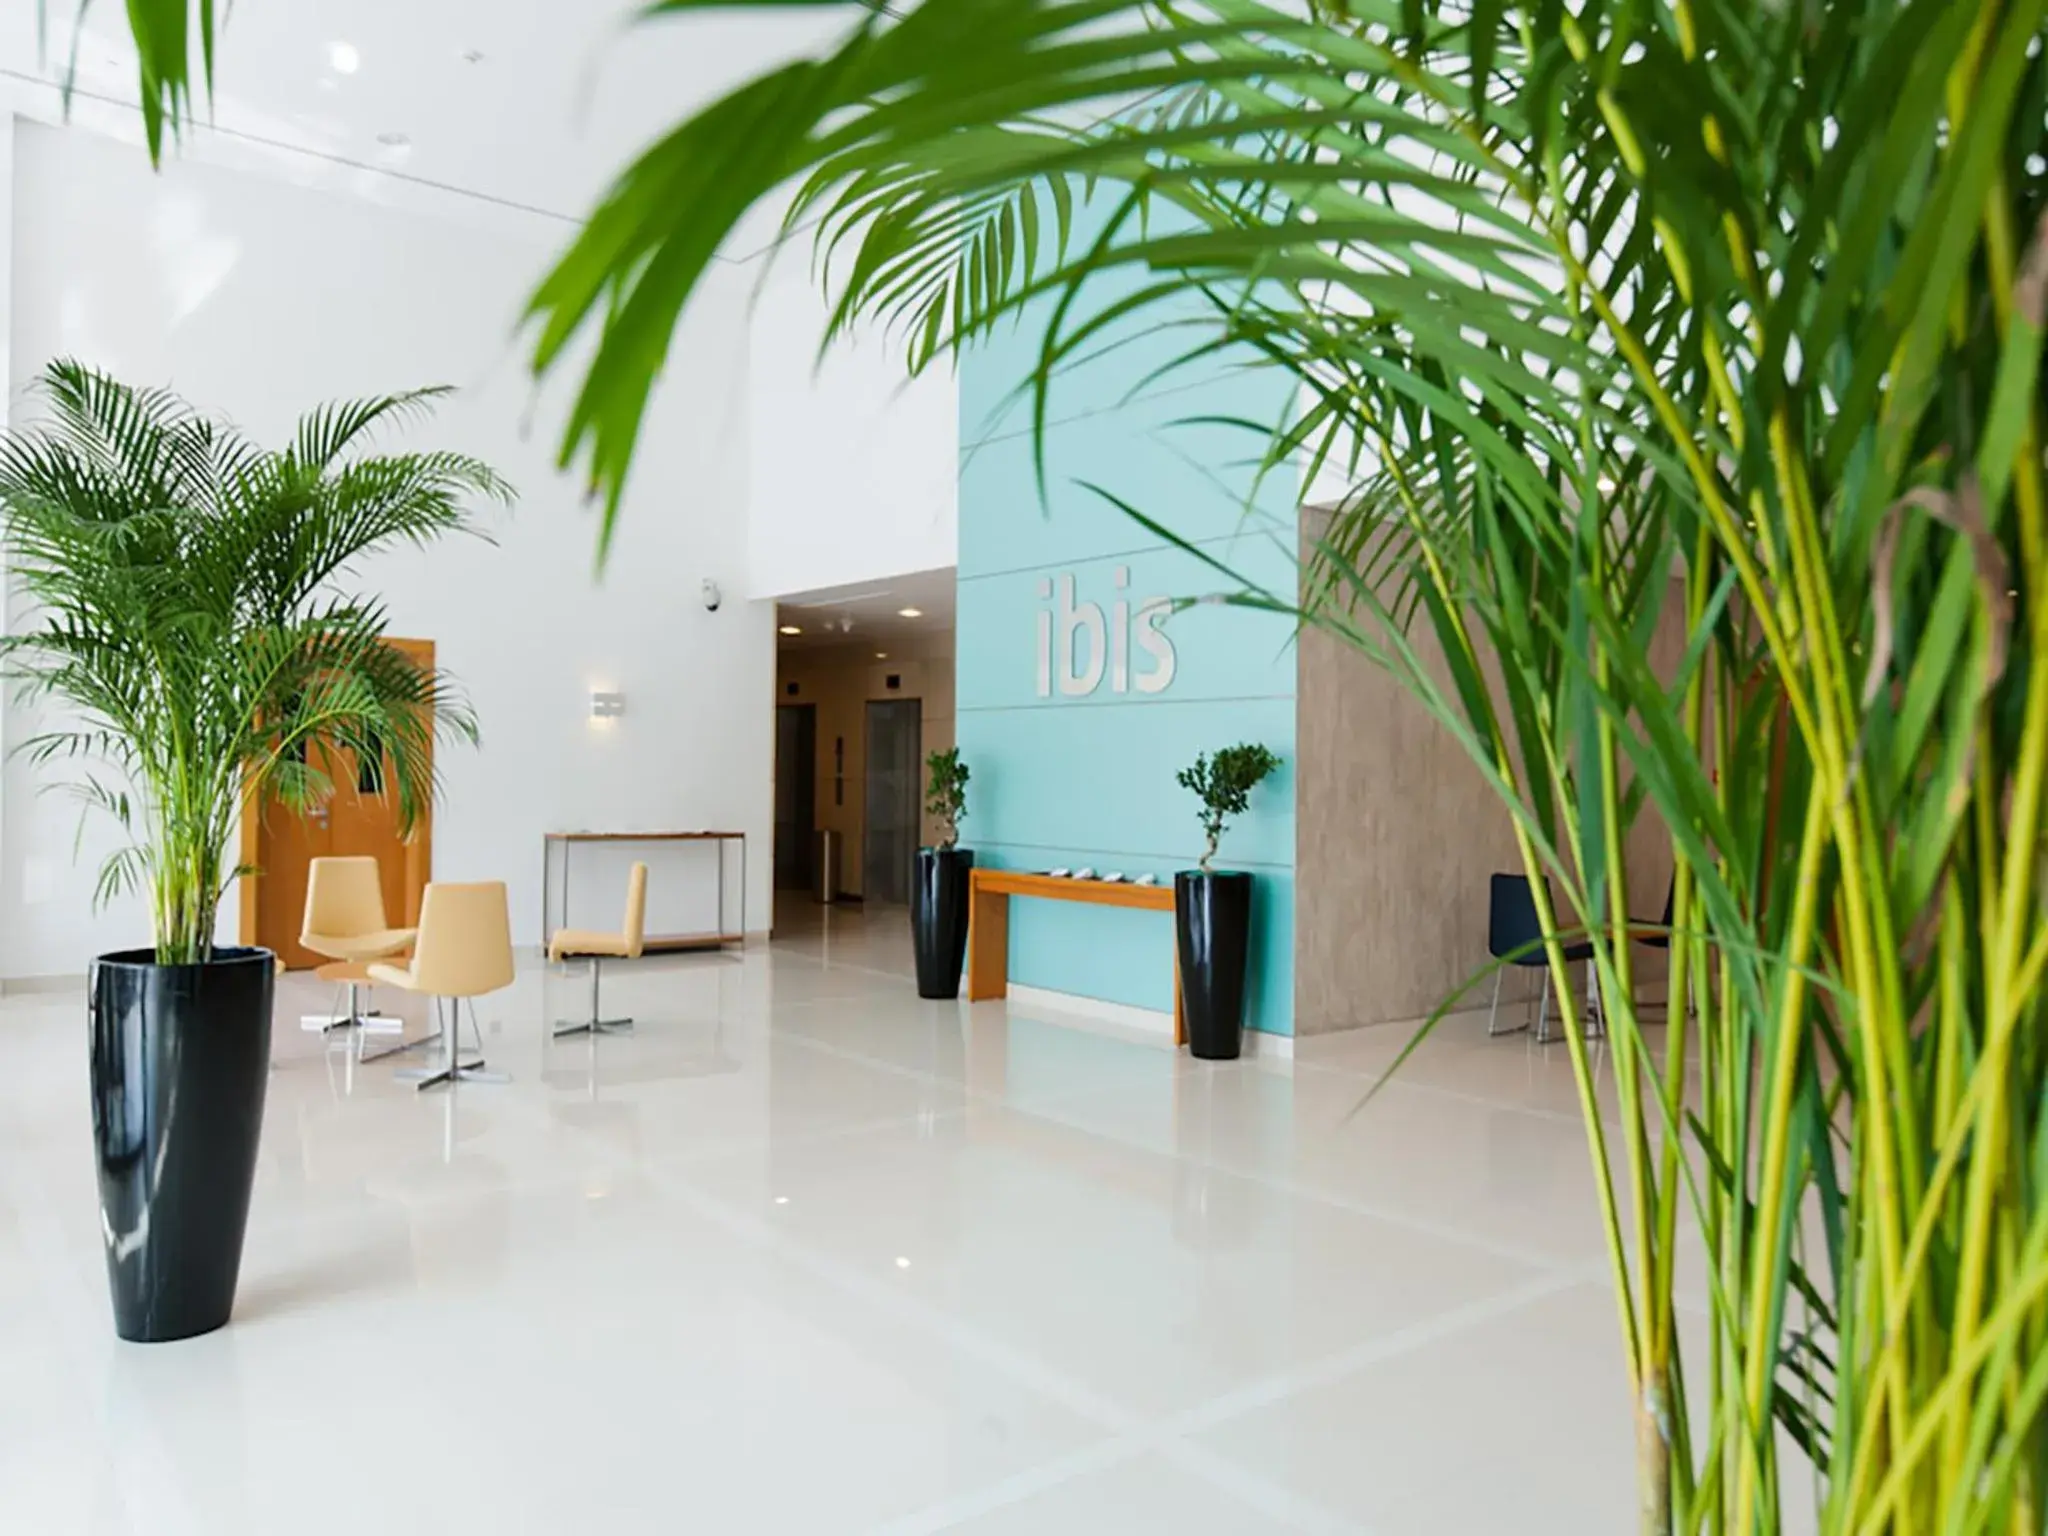 Lobby or reception, Lobby/Reception in Ibis Abu Dhabi Gate Hotel